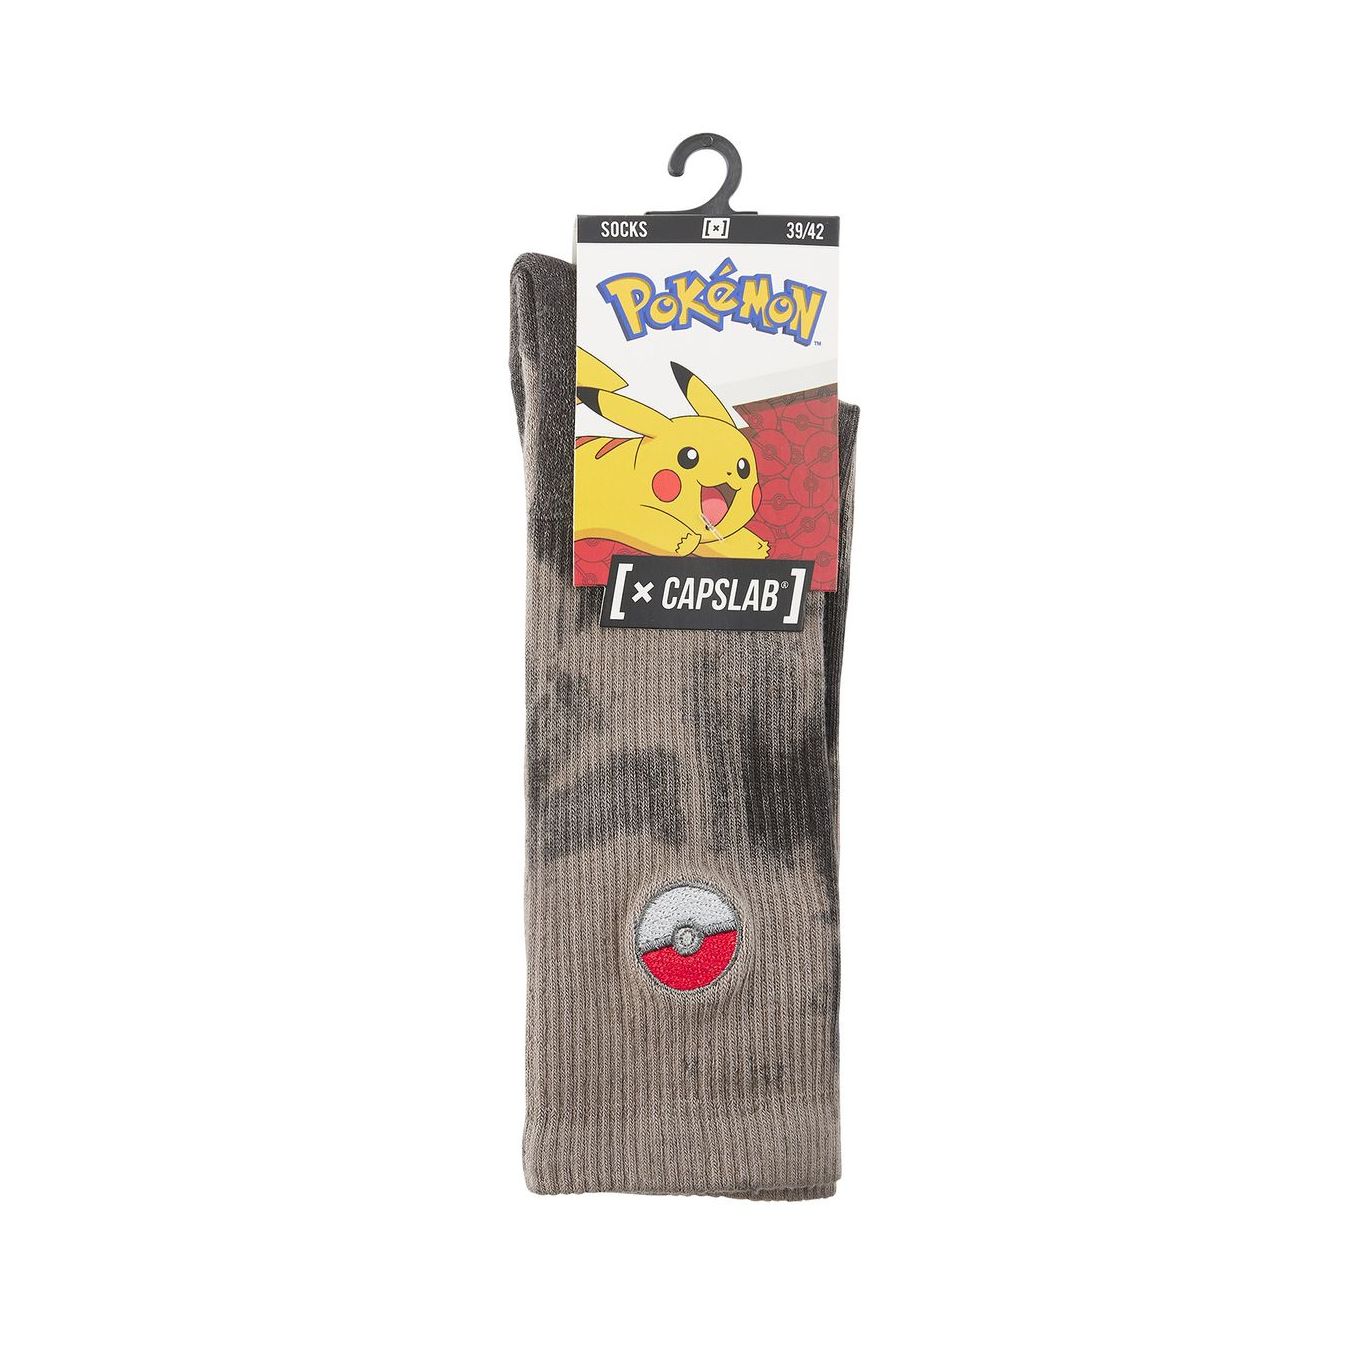 Paire de tennis Capslab Tie and Dye Pokémon Pokéball Capslab - 3